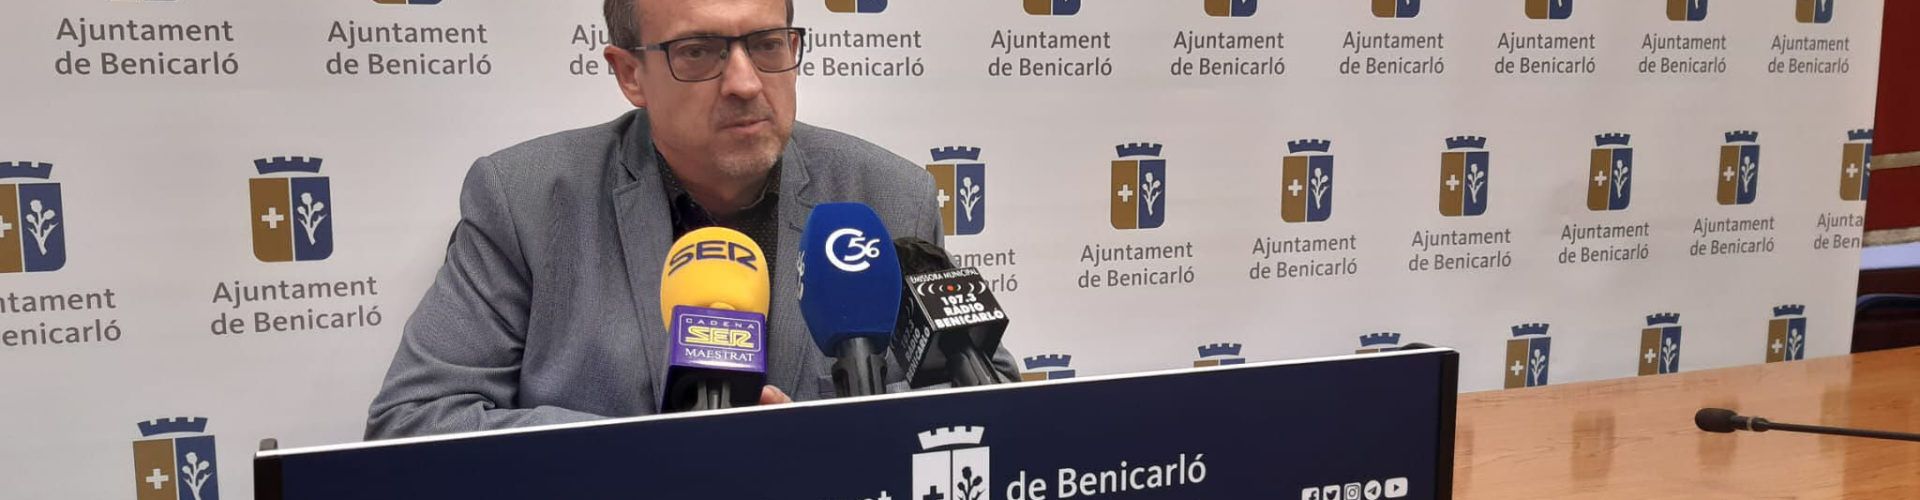 Benicarló contractarà més de 20 persones a través de dos programes d’ocupació